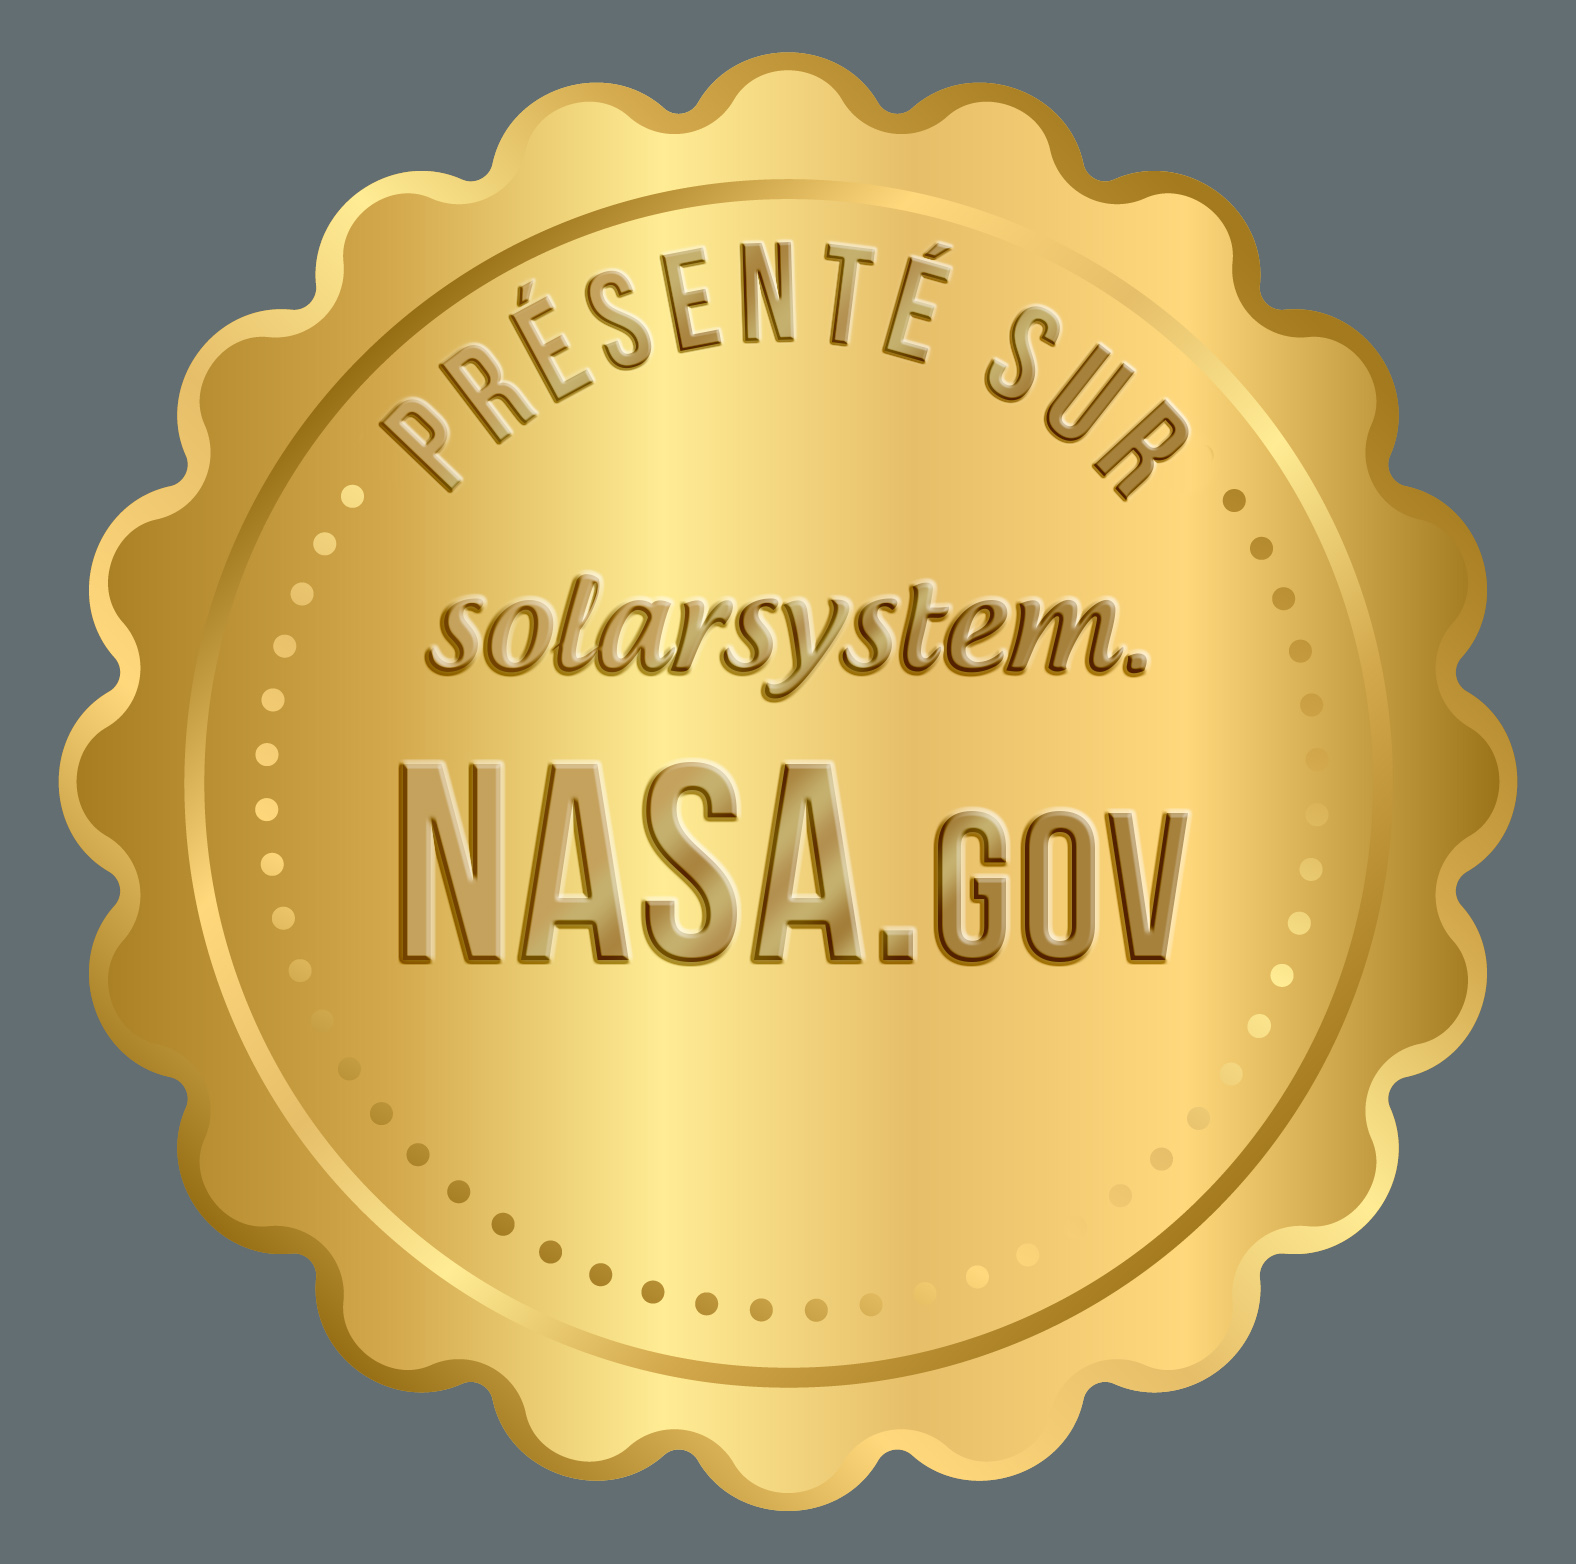 Présenté en solarsystem.NASA.gov